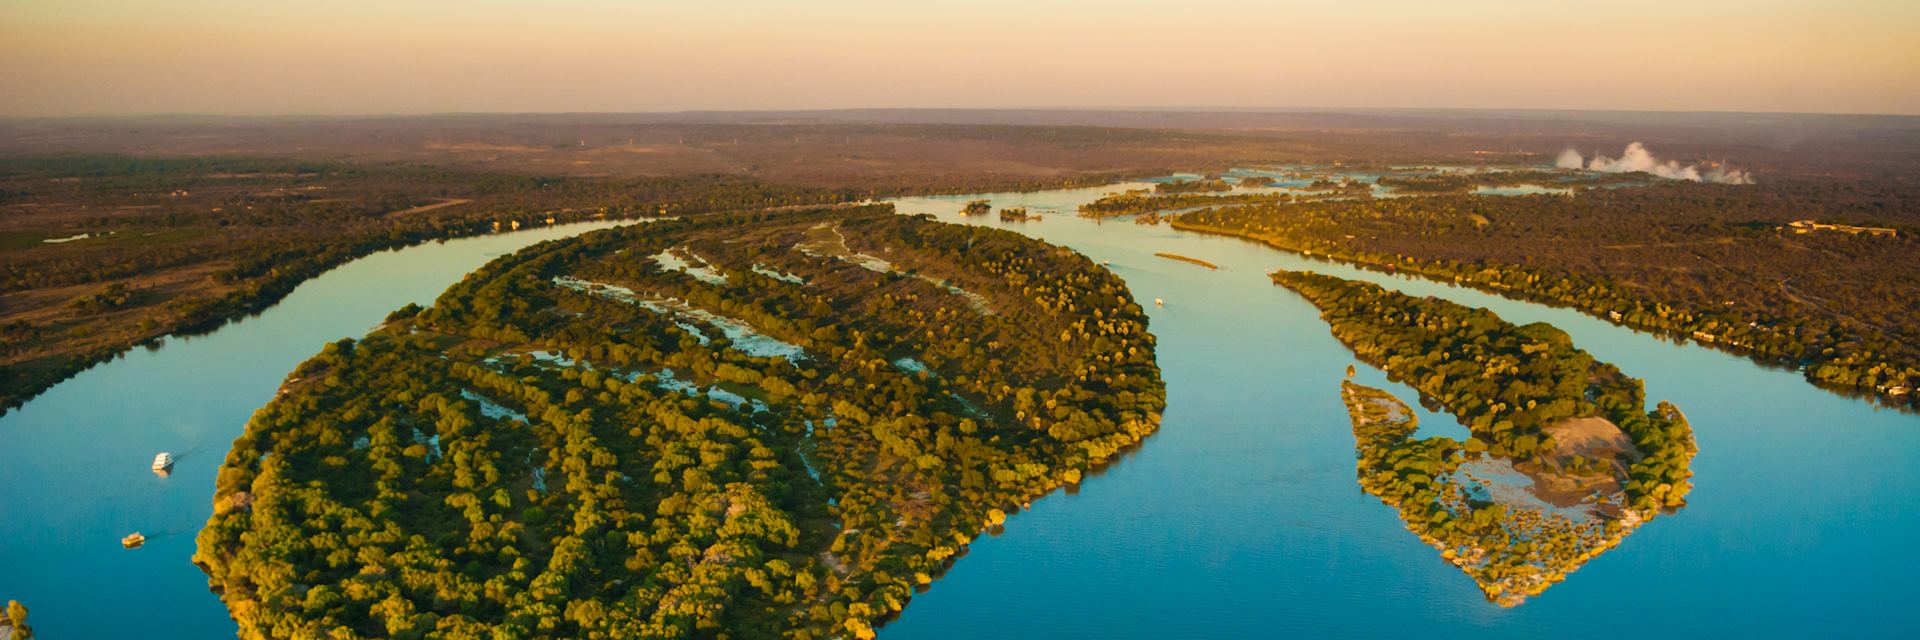 16-enigmatic-facts-about-zambezi-river